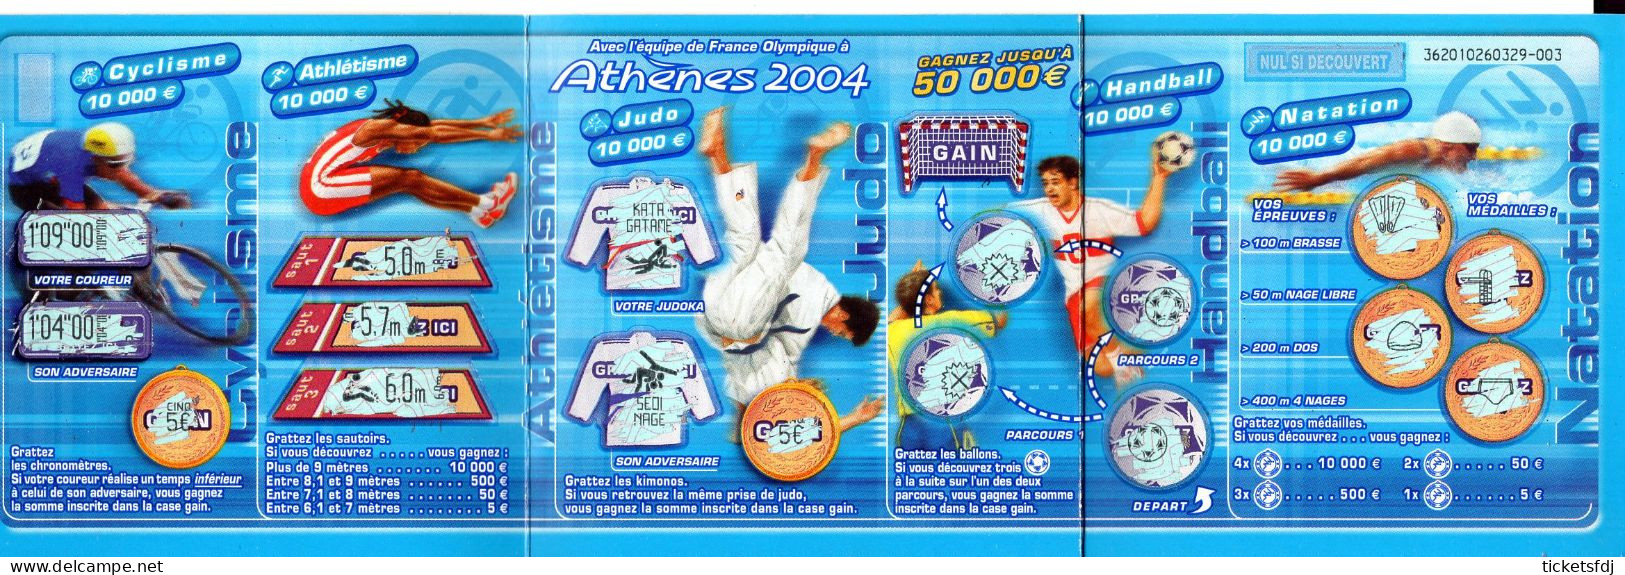 Grattage FDJ - ATHENES 2004 - 36201 - Trait Bleu Ou Trait Rouge - FRANCAISE DES JEUX - Lottery Tickets